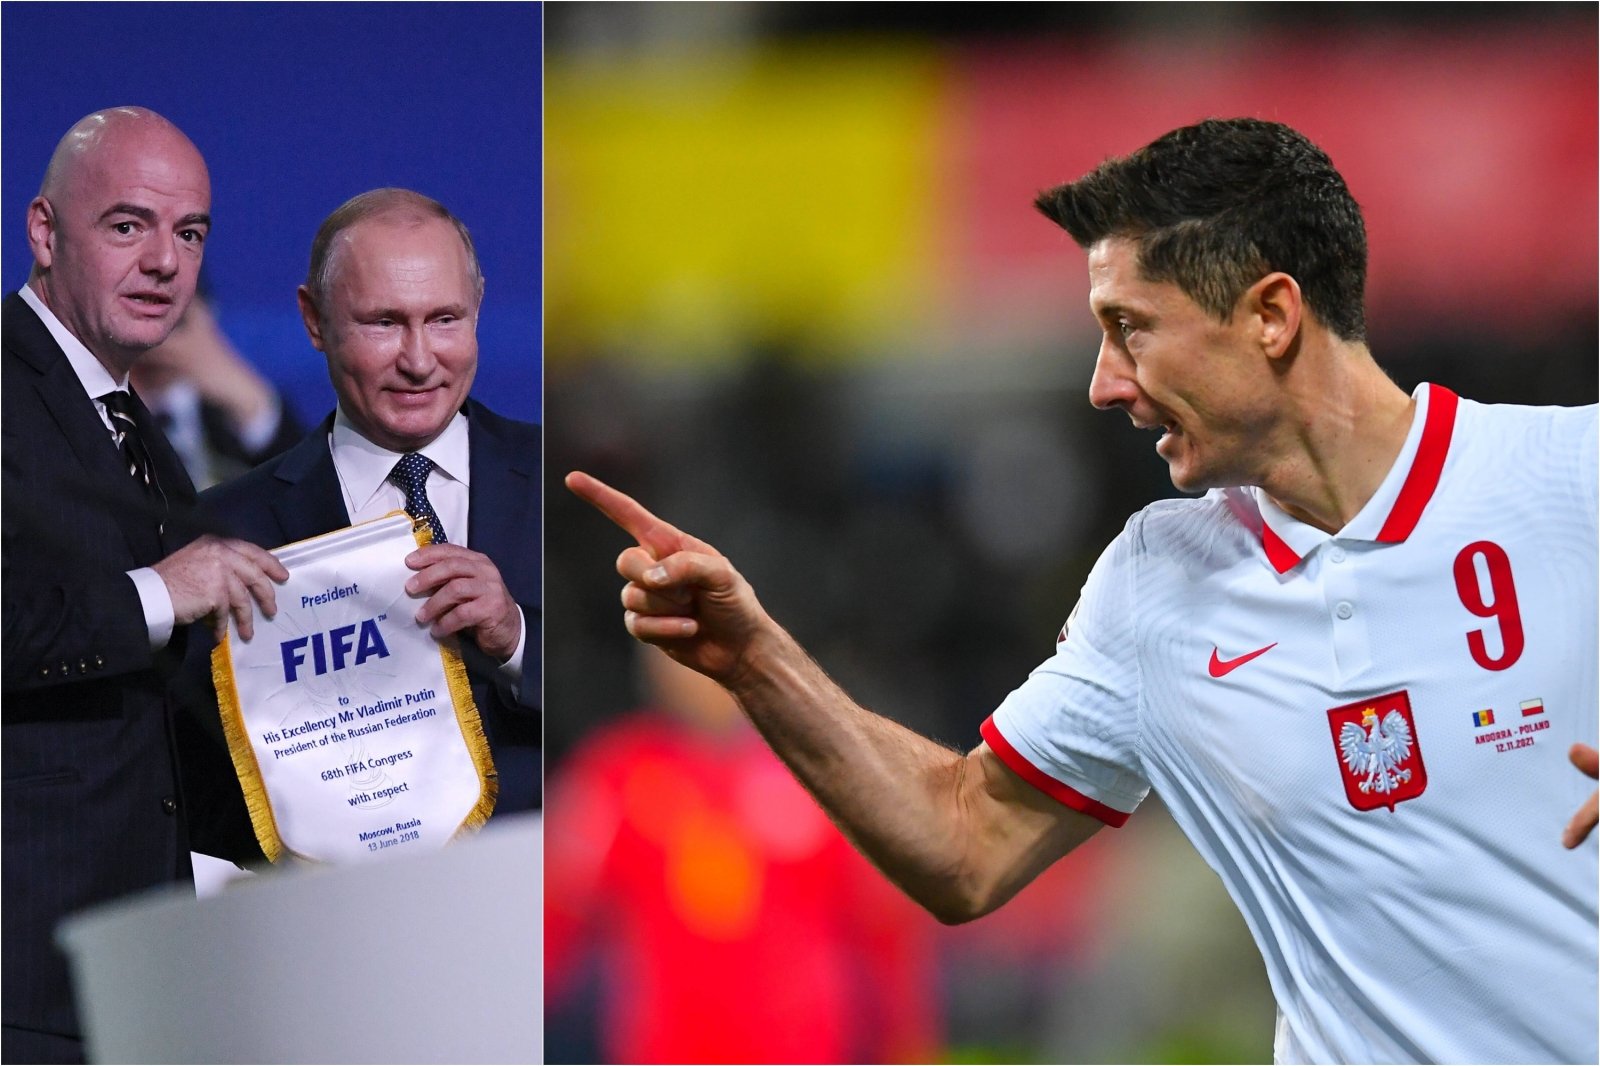 Polski gniew i niepokojące milczenie w FIFA: takie niezrozumiałe zachowanie, skandal